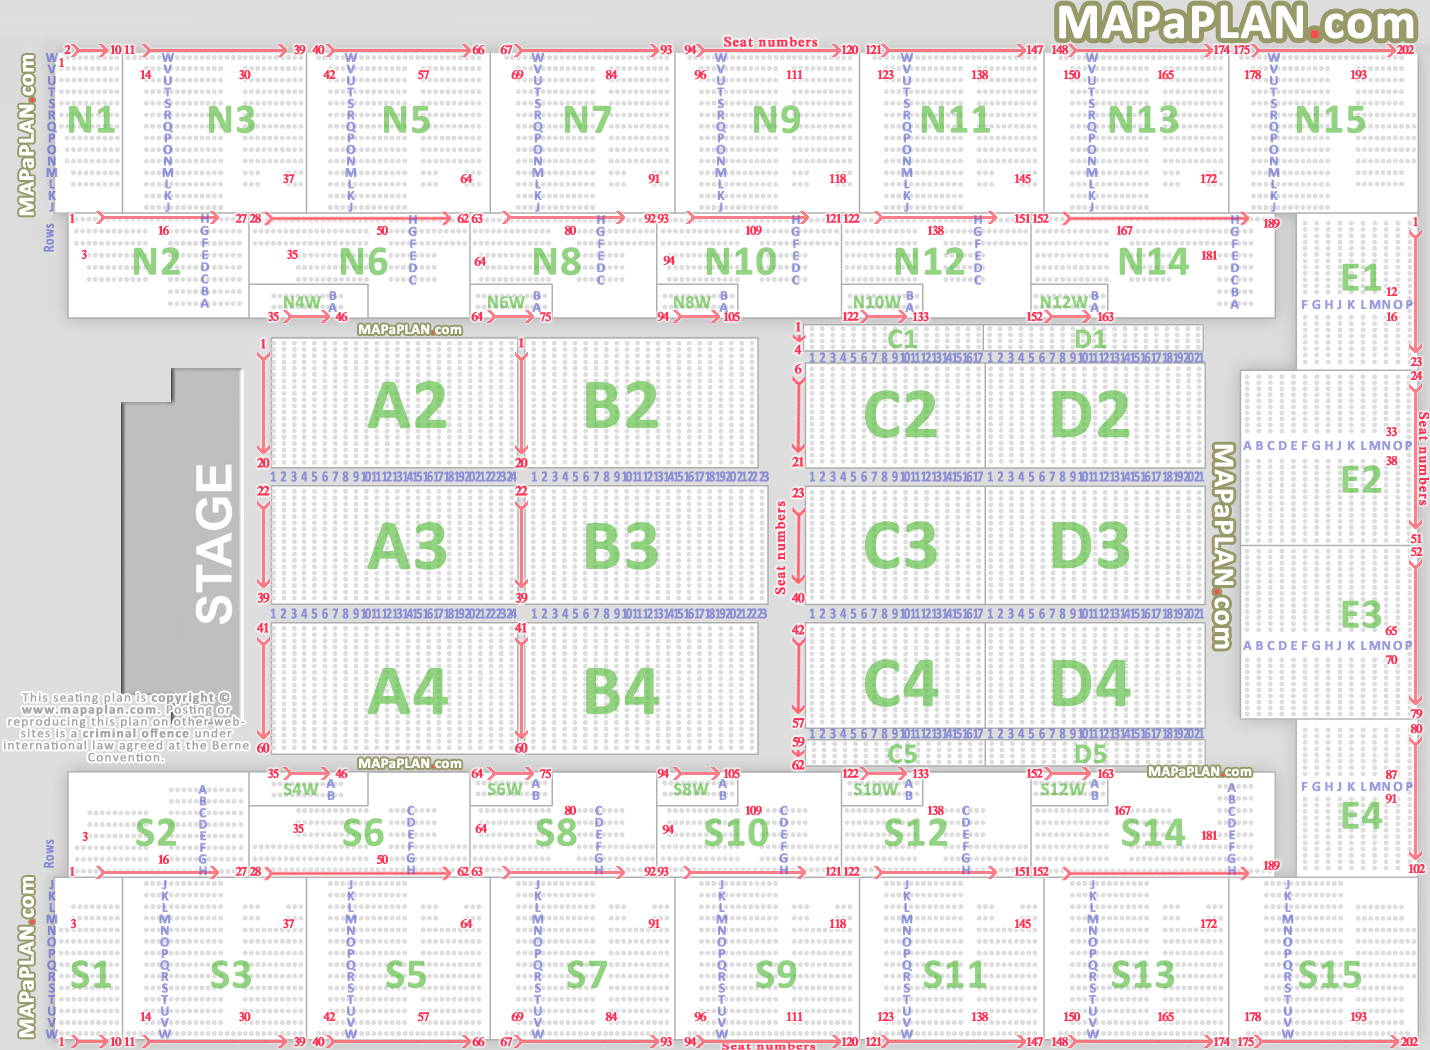 wembley-arena-london-seating-plan-01-Det